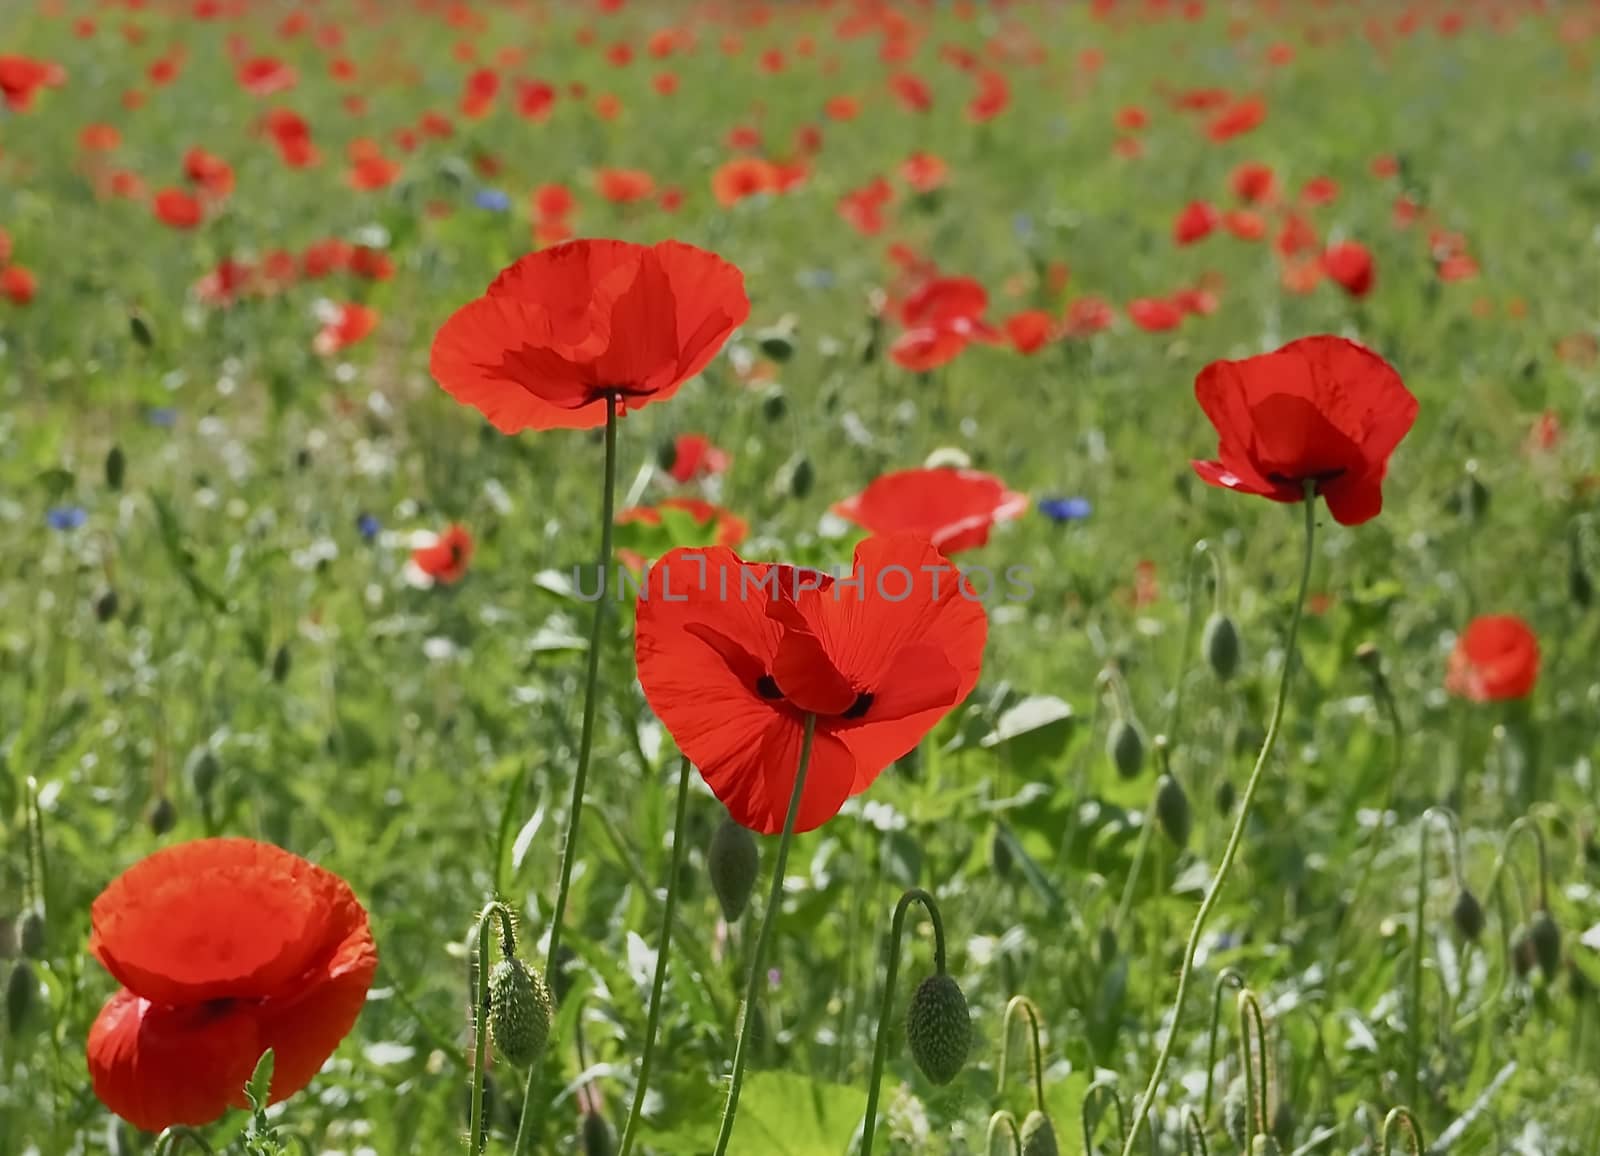 Macro of a red poppy flower in a field